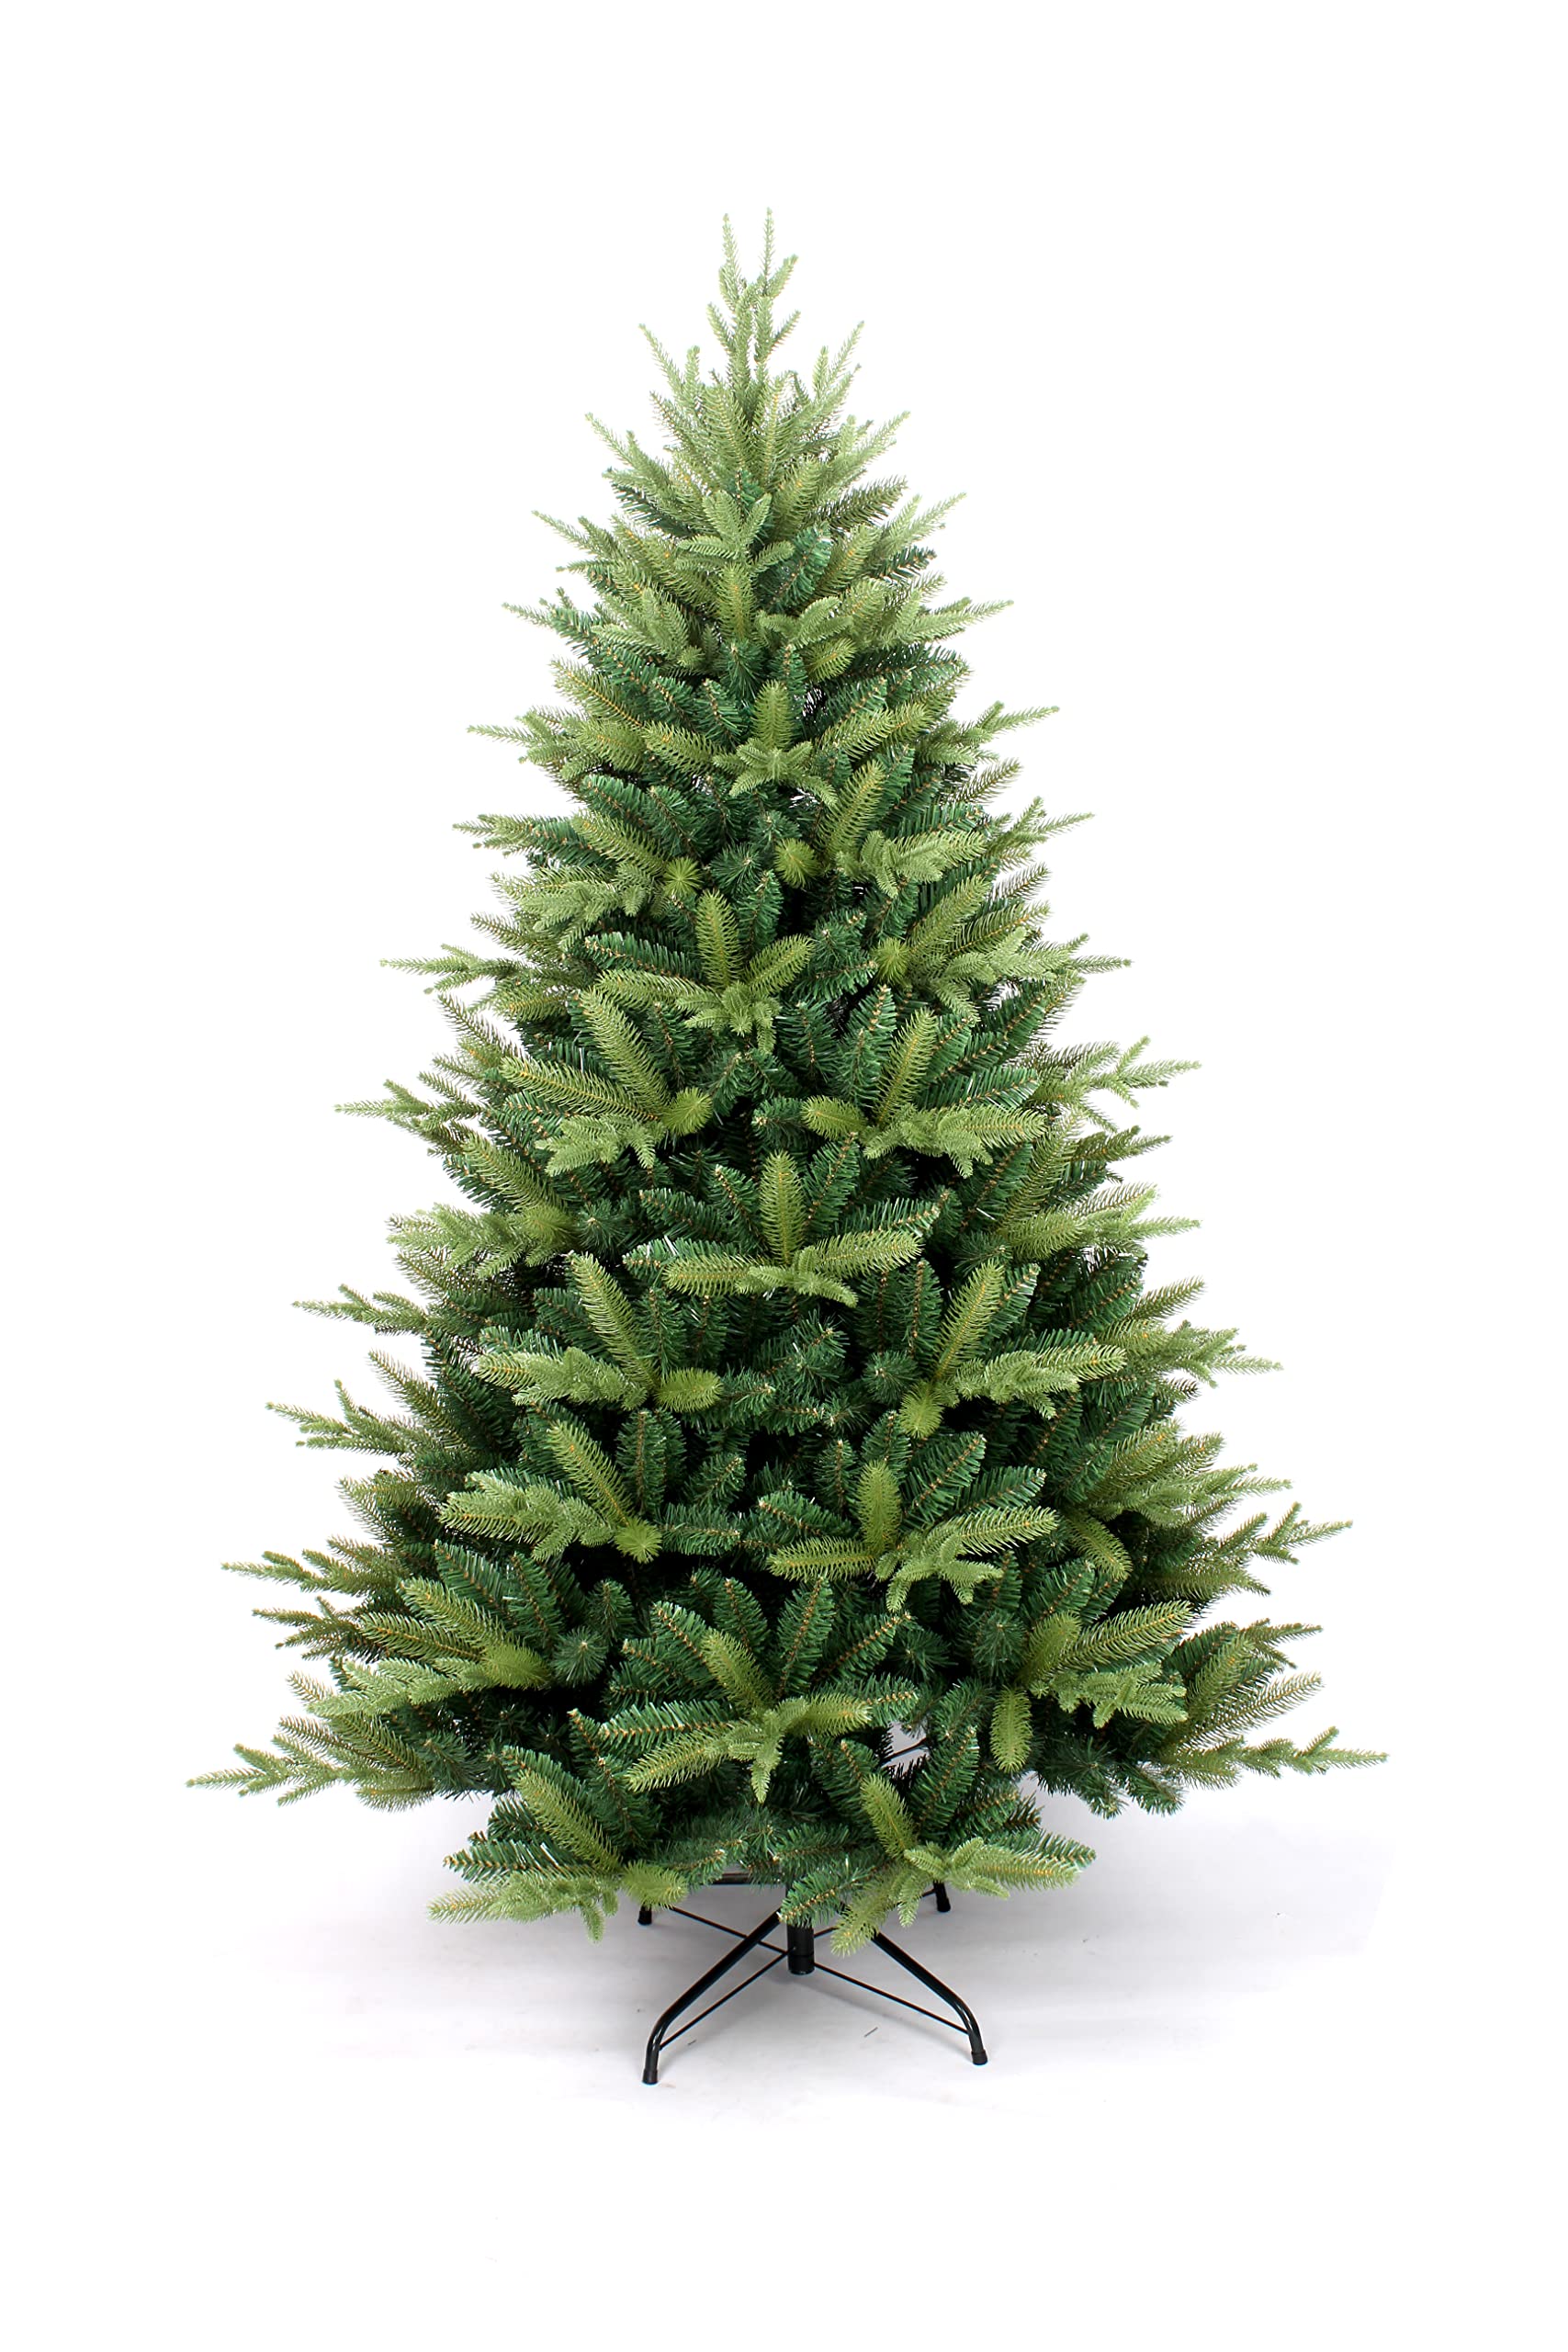 SHATCHI Künstlicher Weihnachtsbaum Virginia Fichte, 1,8 m, mit 1034 Spitzen und Metallständer, Scharnier-Zweige, Weihnachten, Feiertage, Festliche Heimdekorationen, PVC